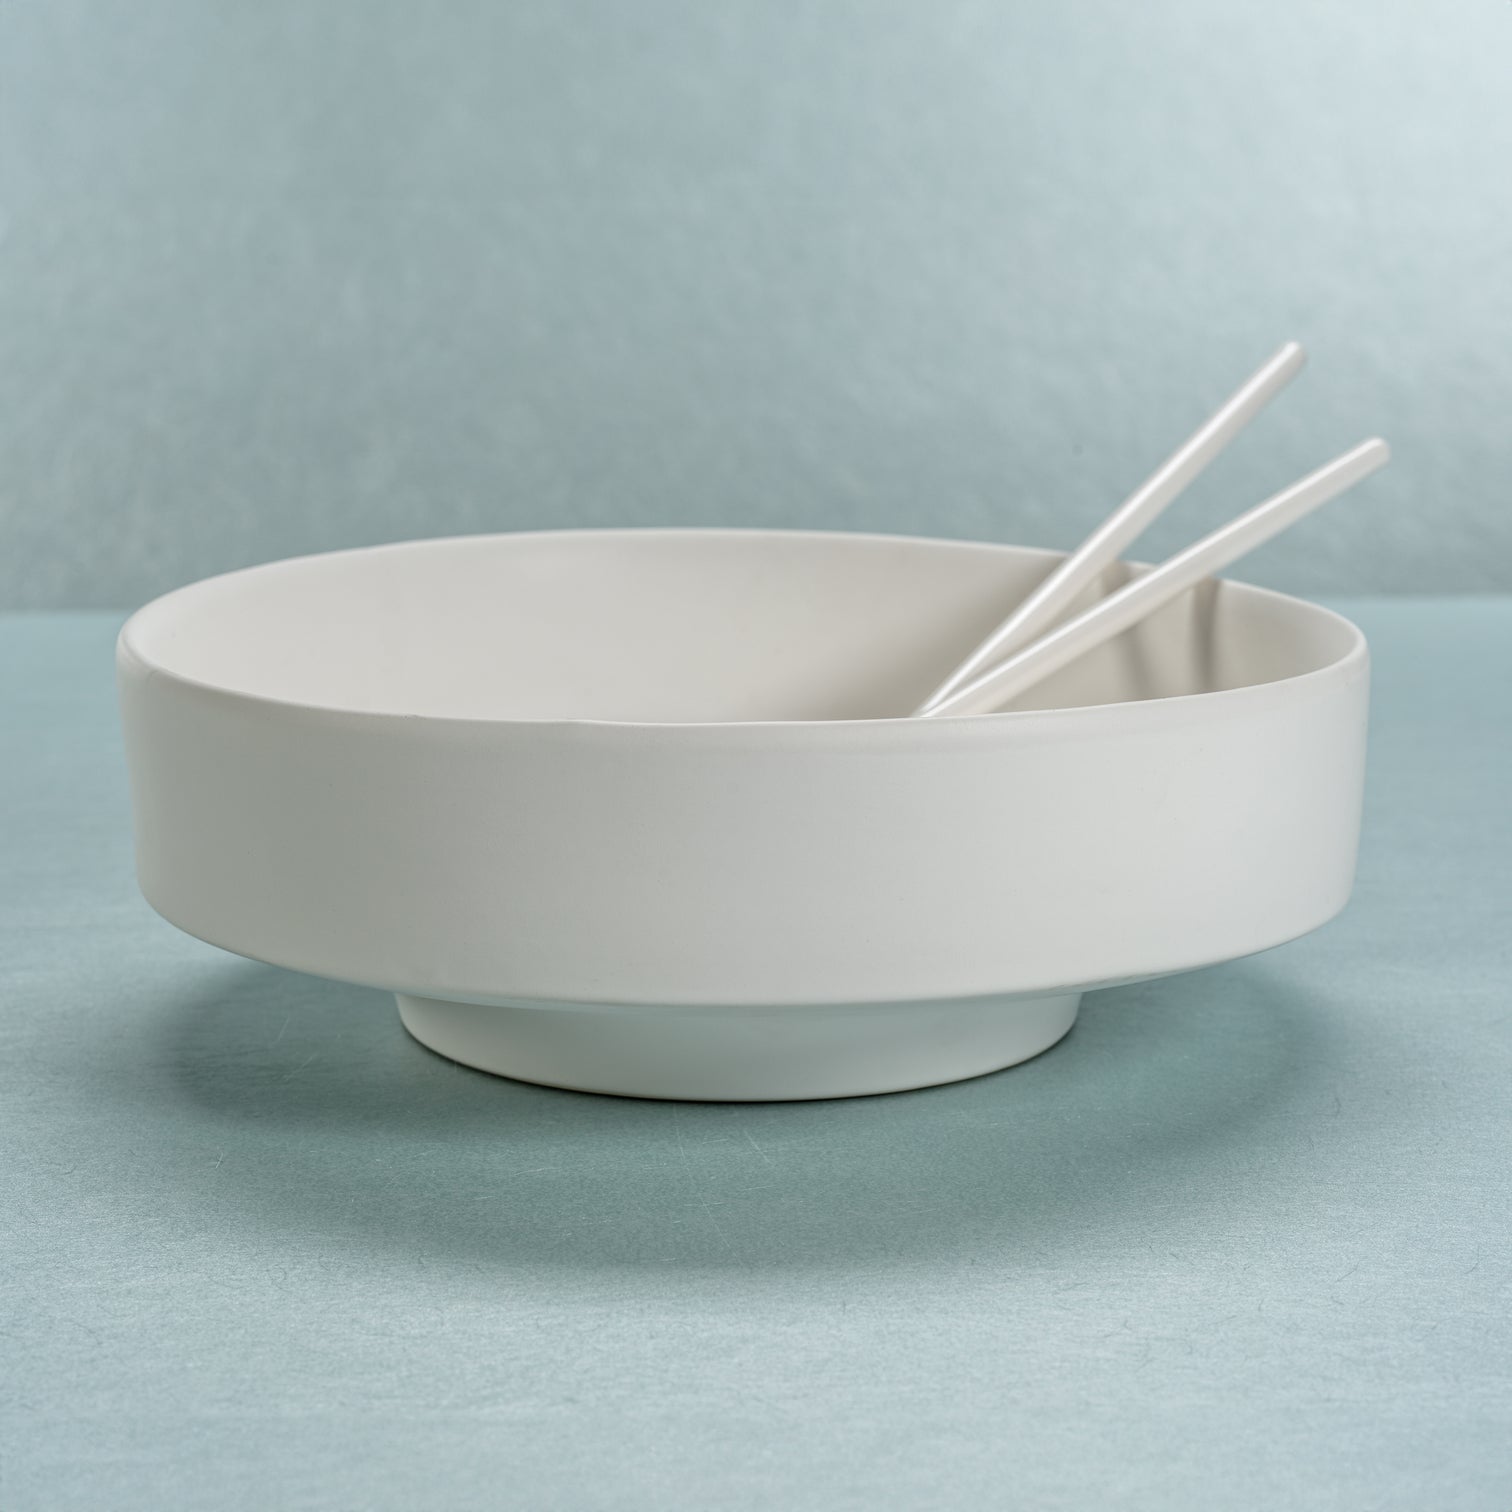 Côte d'Azur White Ceramic Centerpiece Bowl